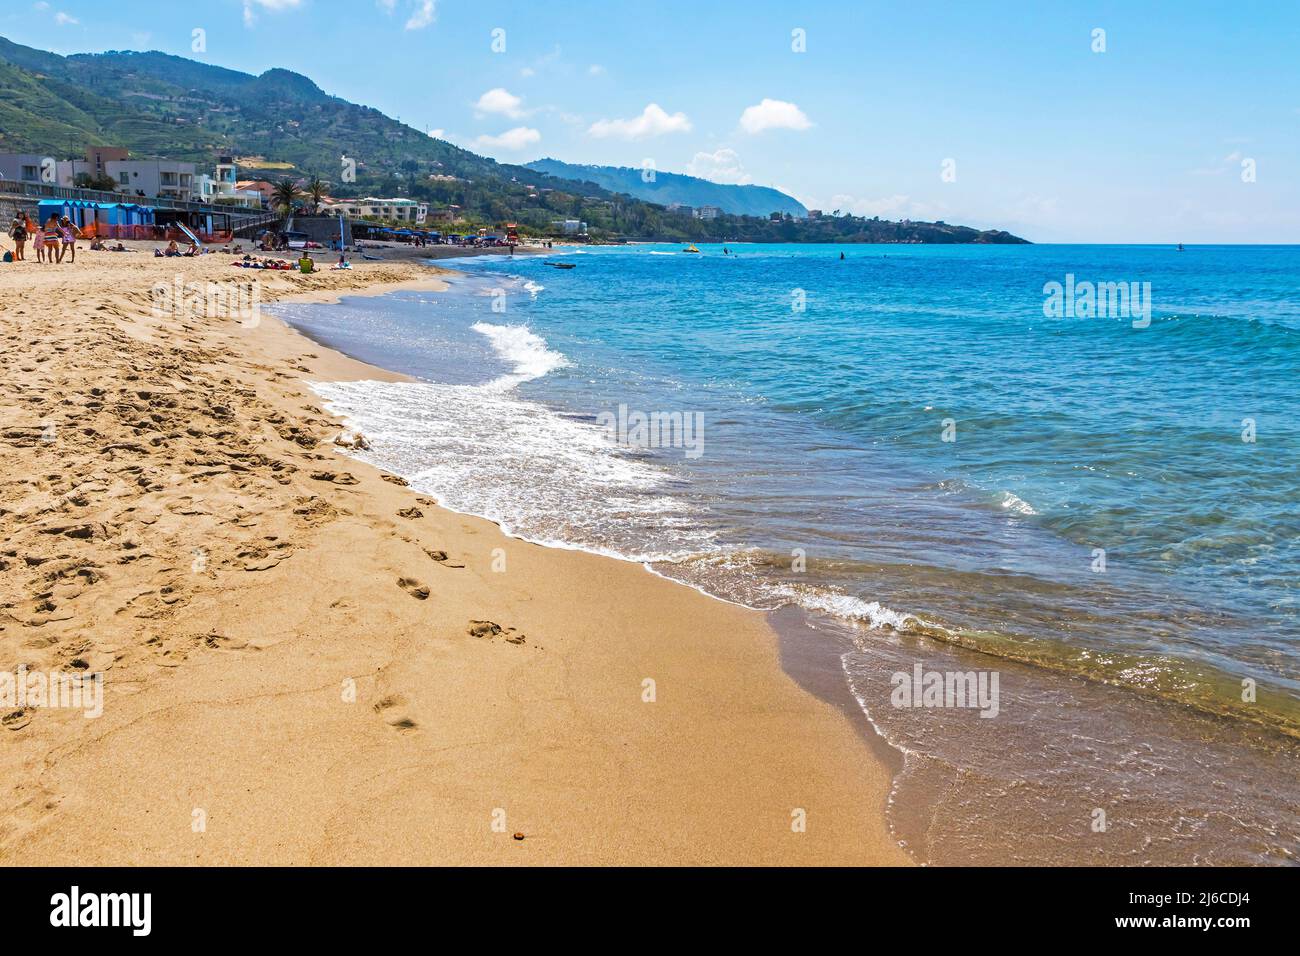 Sable doré de la plage de Cefalu, ville de Cefalu, Sicile, Italie. Cefalu a une longue et belle plage avec du sable propre et doré Banque D'Images